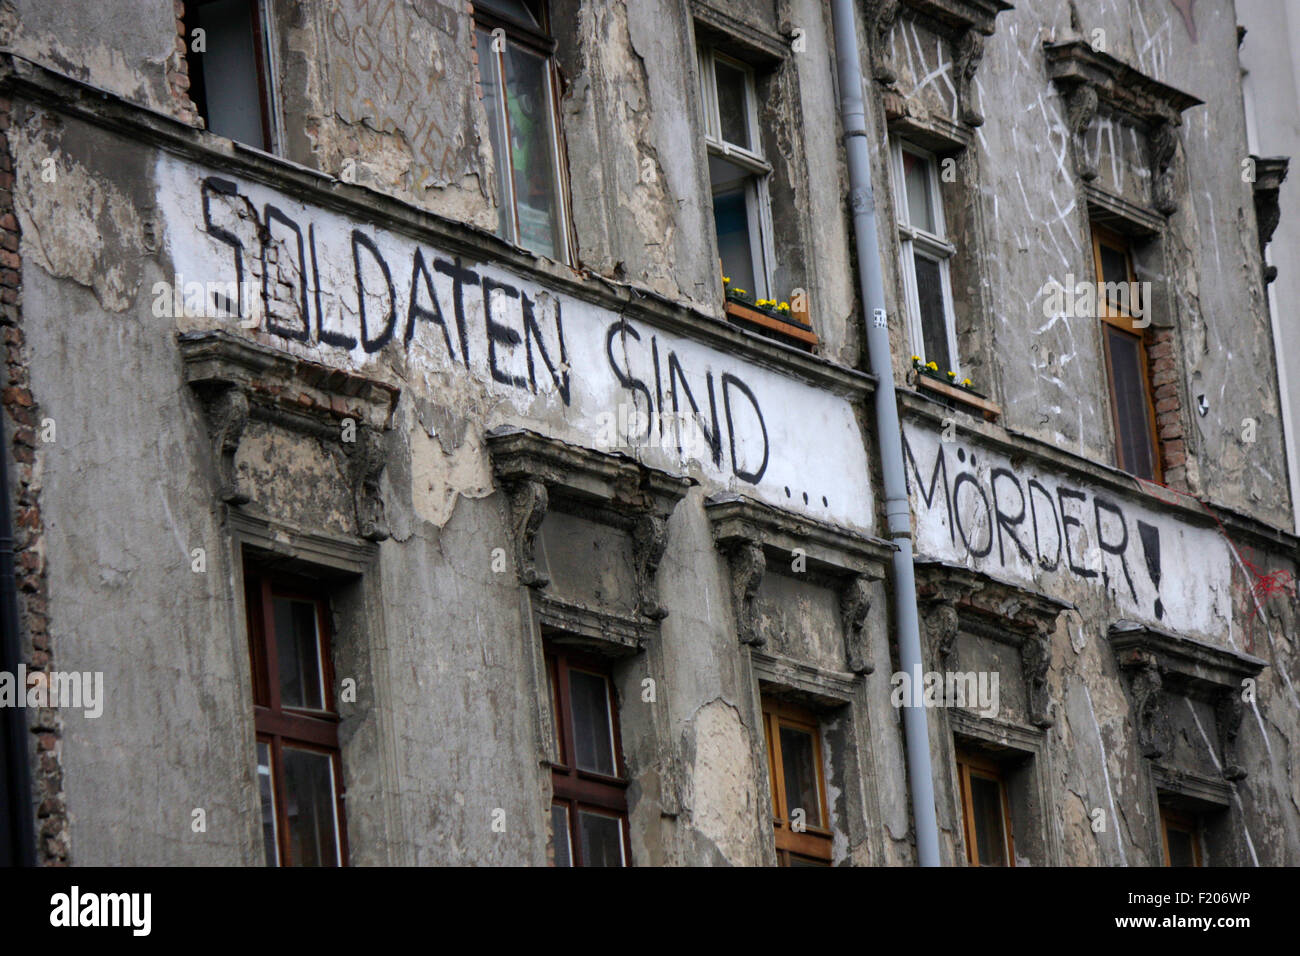 'Soldaten sind Moerder': politischer Slogan auf besetztem Haus, Berlin-Mitte. Stock Photo